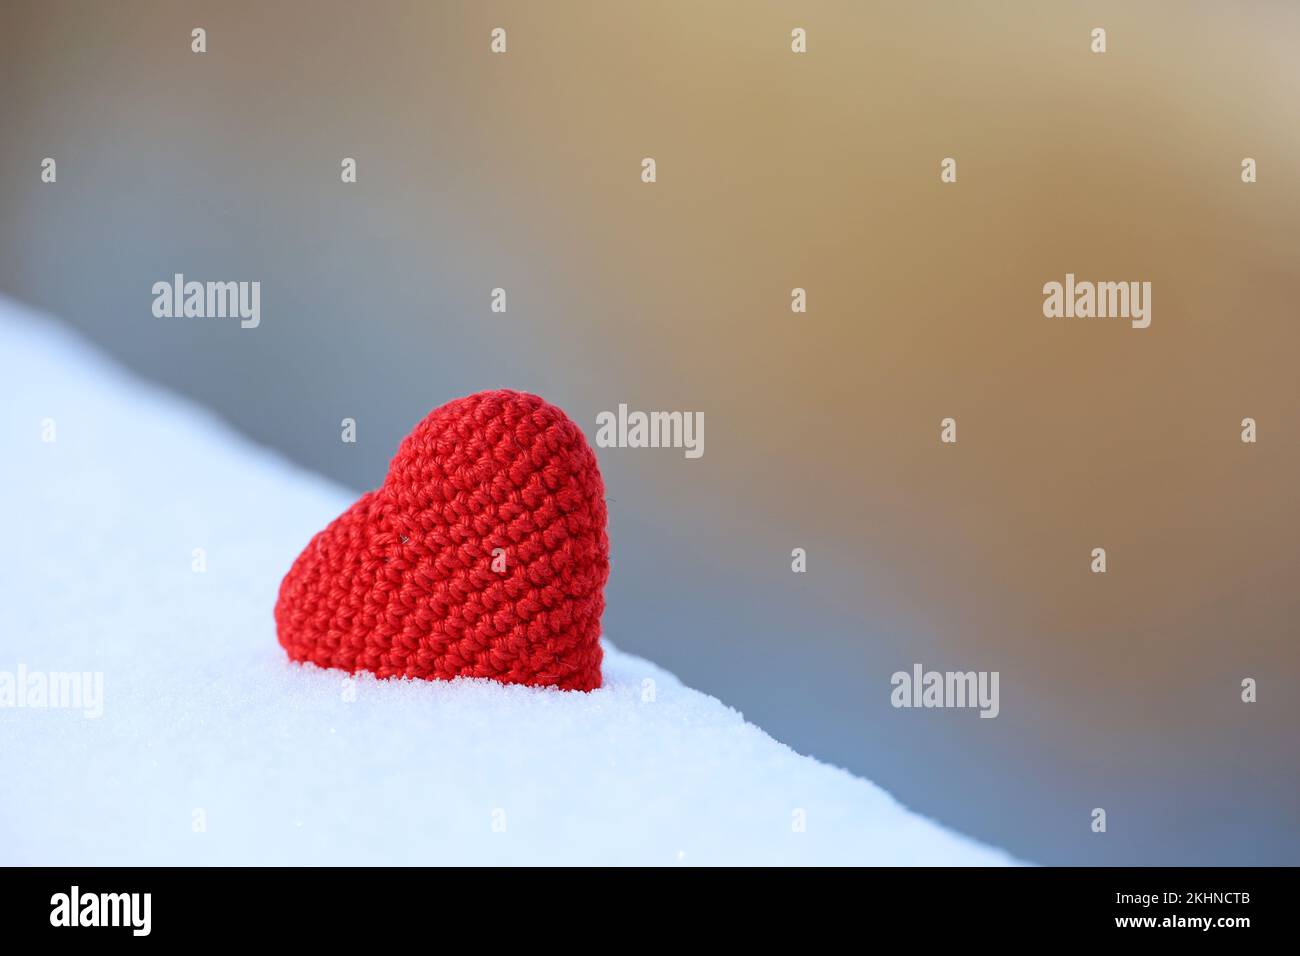 Coeur tricoté rouge dans la neige sur fond flou. Symbole de l'amour romantique, carte de Saint-Valentin Banque D'Images